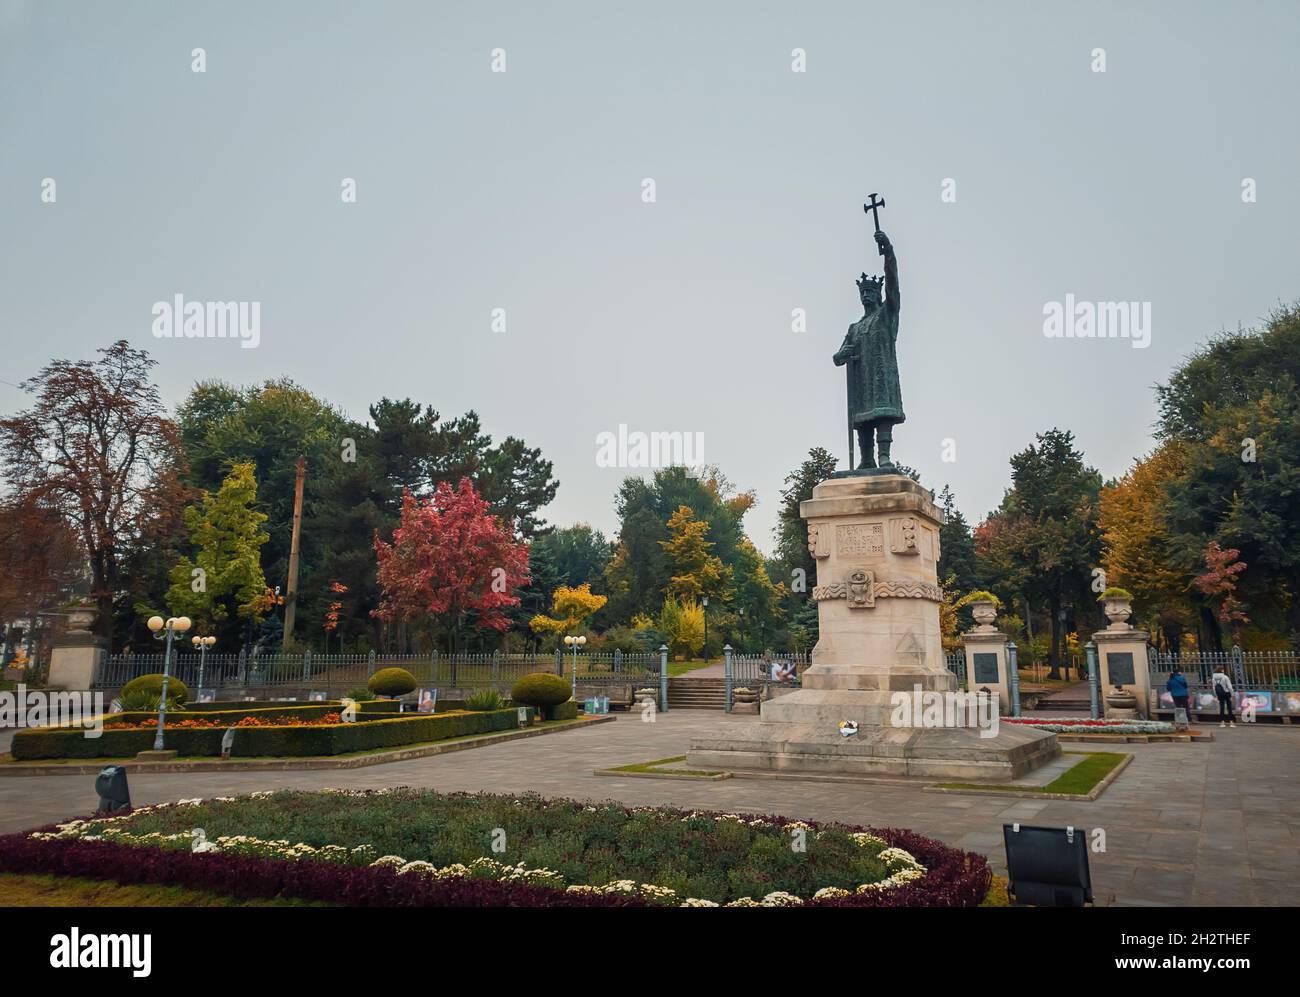 Stephen III le Grand monument (statue de Stefan cel Mare) devant le parc dans un jour pluvieux d'automne, ville de Chisinau, Moldavie Banque D'Images